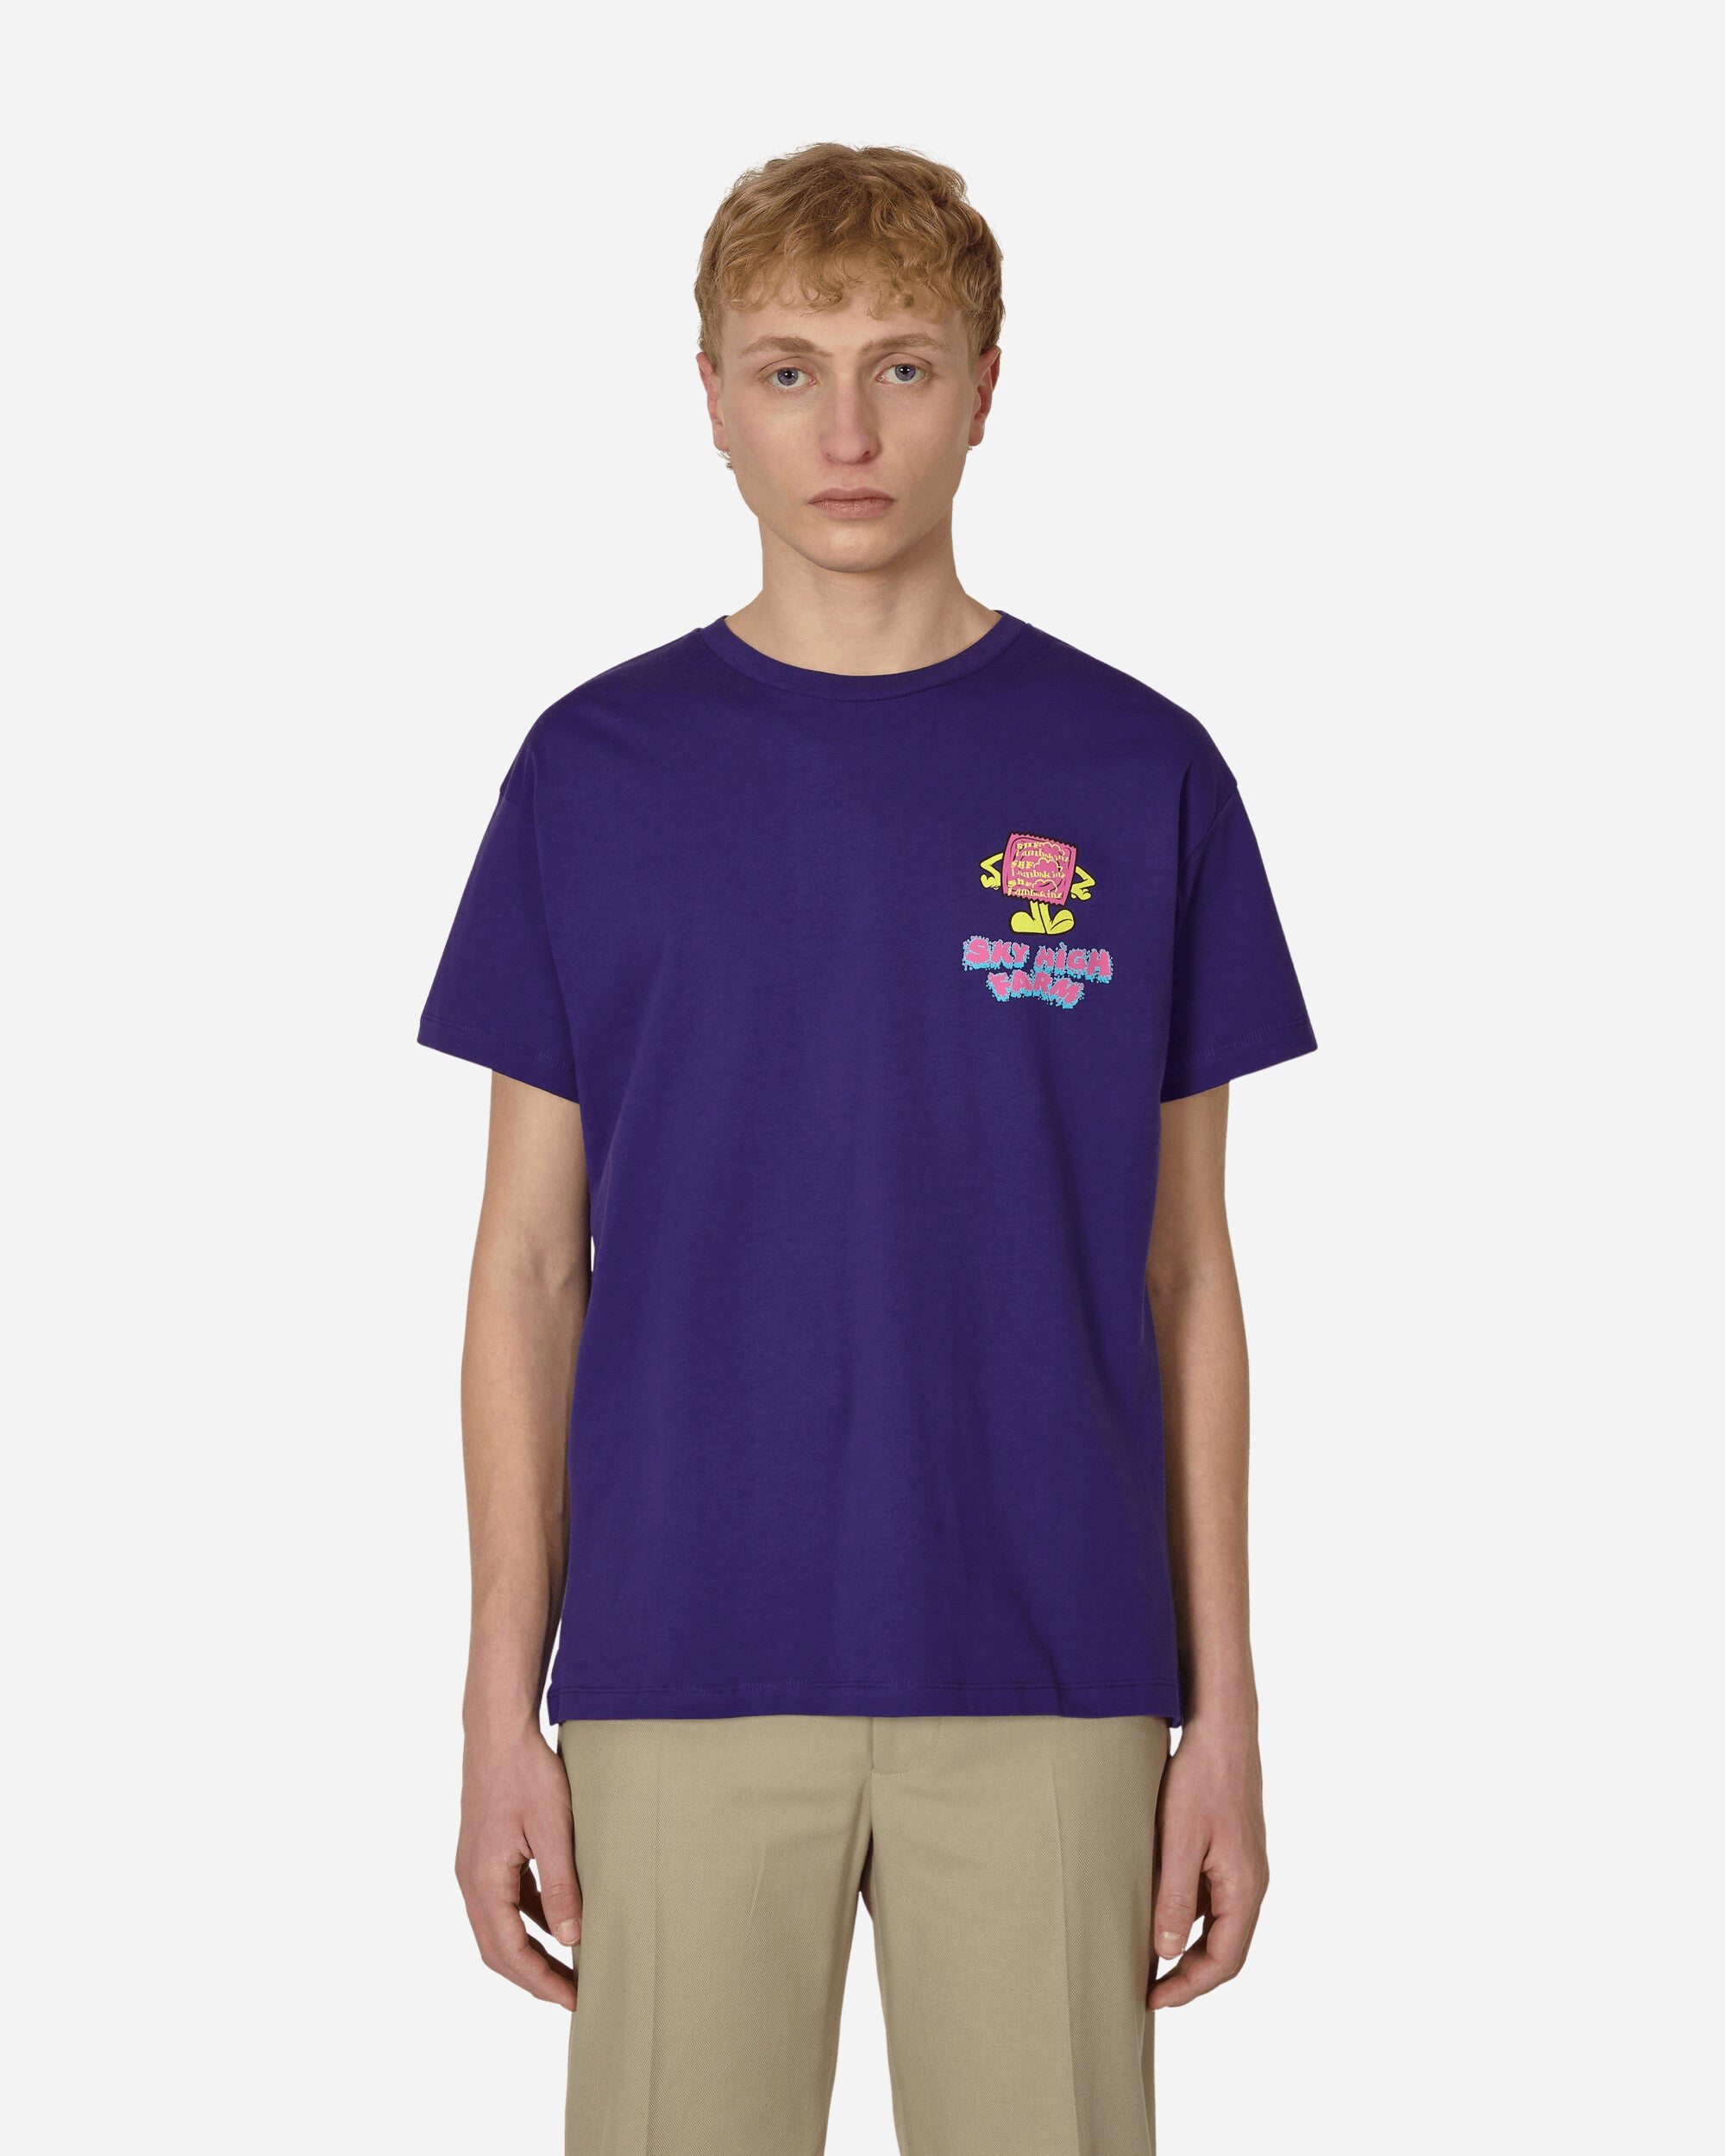 Sky High Farm Flatbush Printed Tshirt Purple T-Shirts Shortsleeve SHF03T001 1